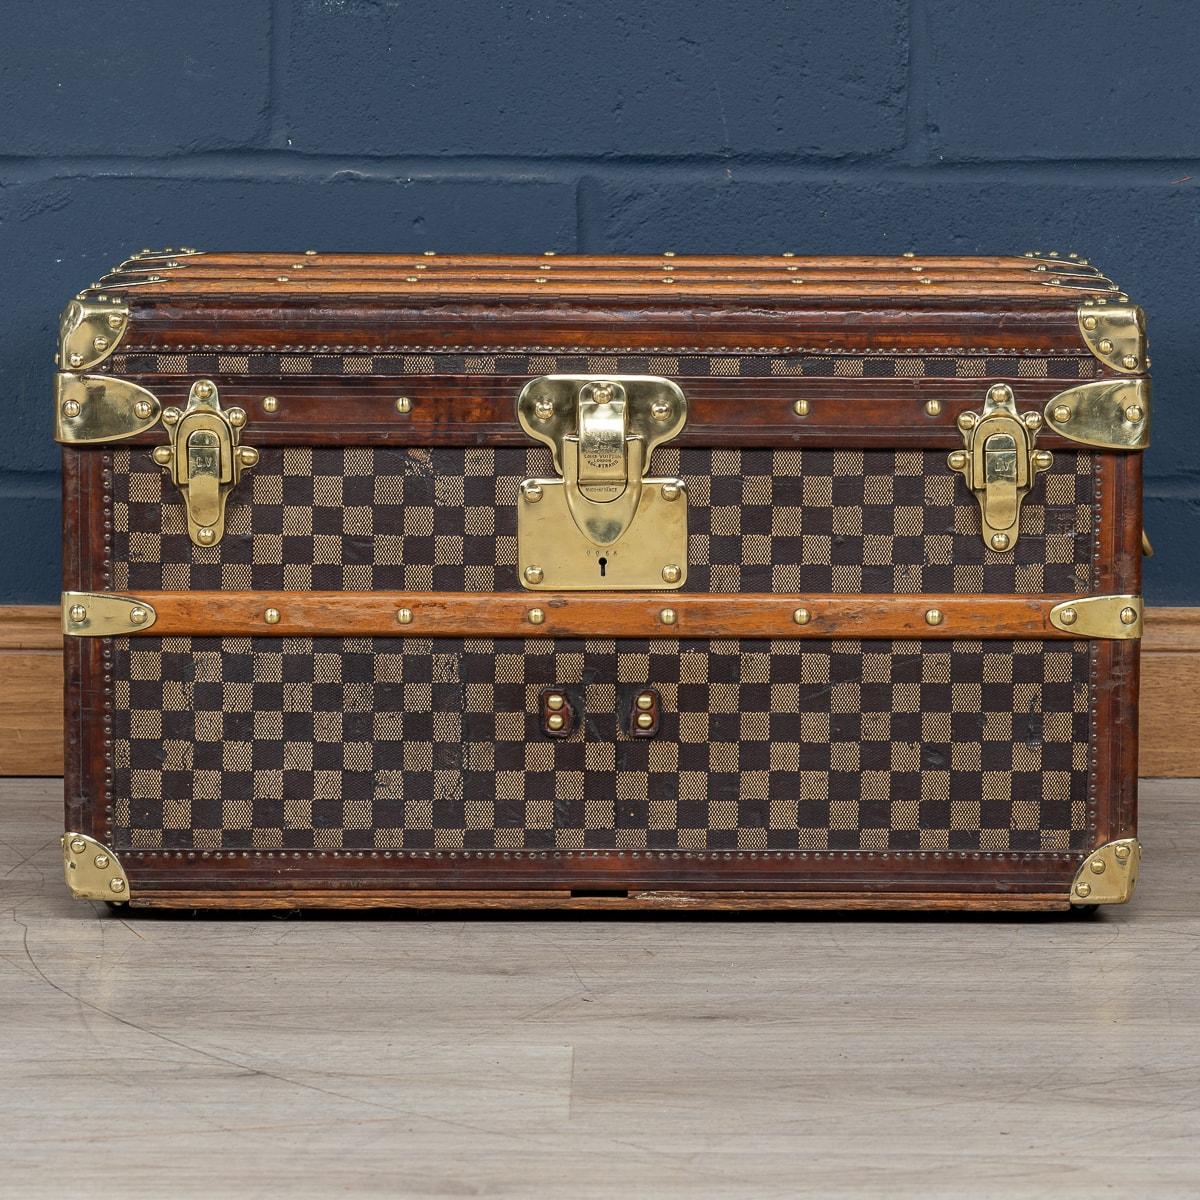 Dieser Koffer ist einer der seltensten Louis Vuitton-Koffer, die angeboten werden. Er ist mit dem weltberühmten Damier-Stoff (Schachbrettmuster) bezogen. Bekannt als das Hemd Stamm, ist es eine winzige Größe und ein extrem seltenes Element in so